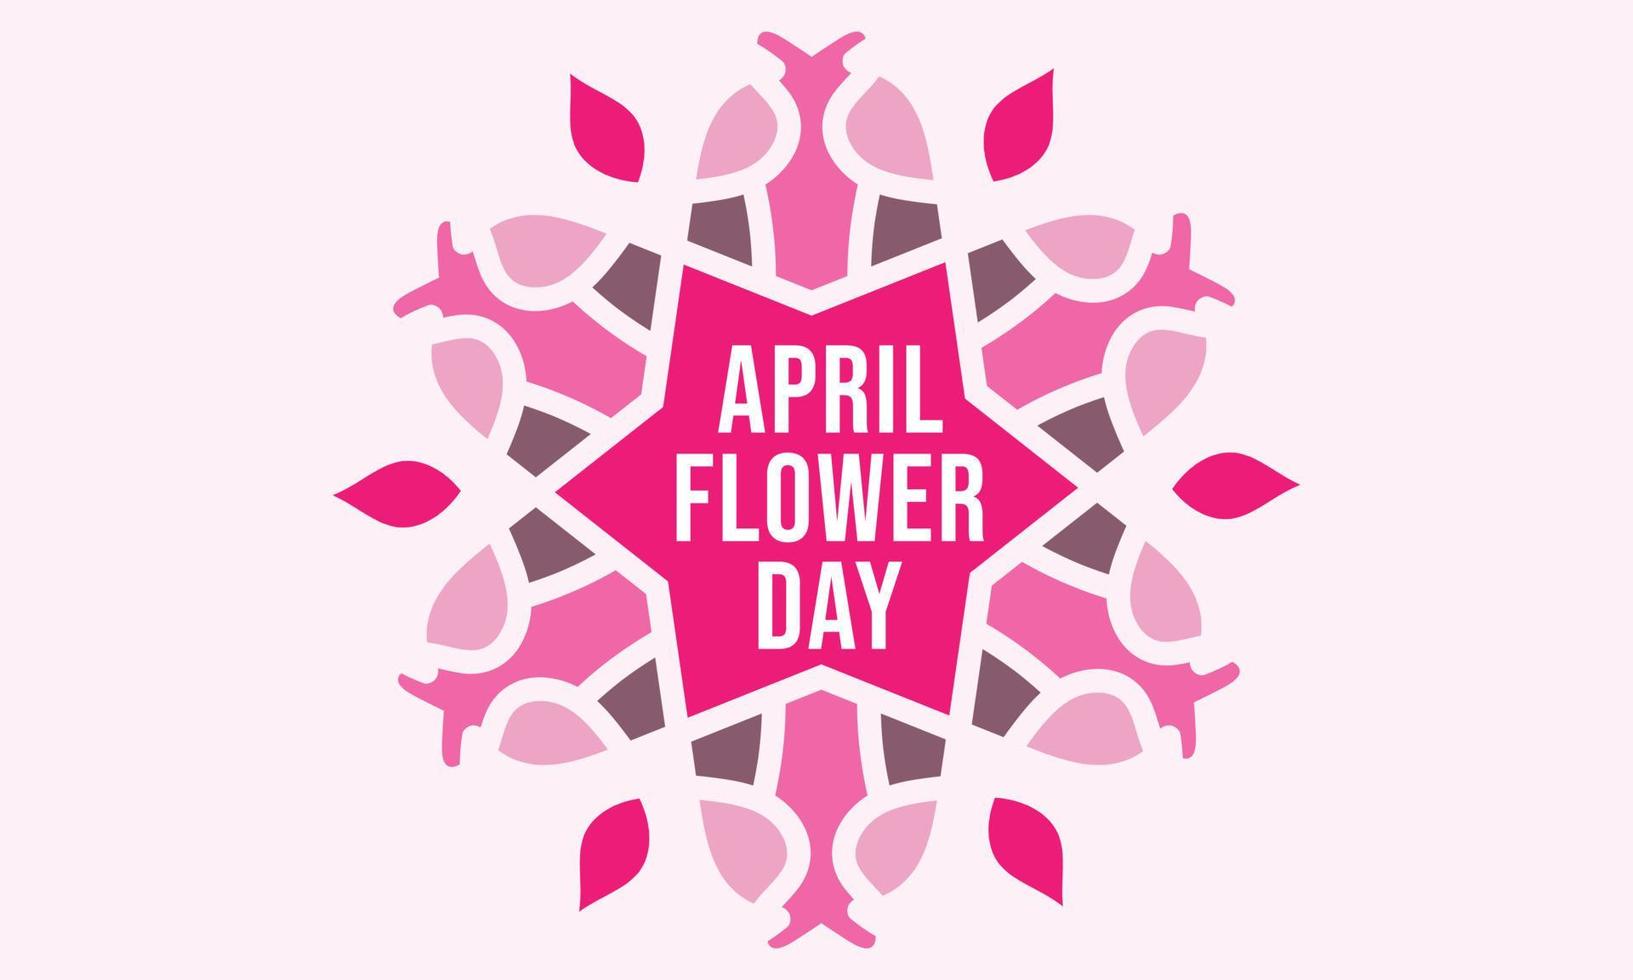 Ciao aprile. aprile mese vettore con fiori decorazione sfondo. design modello celebrazione.